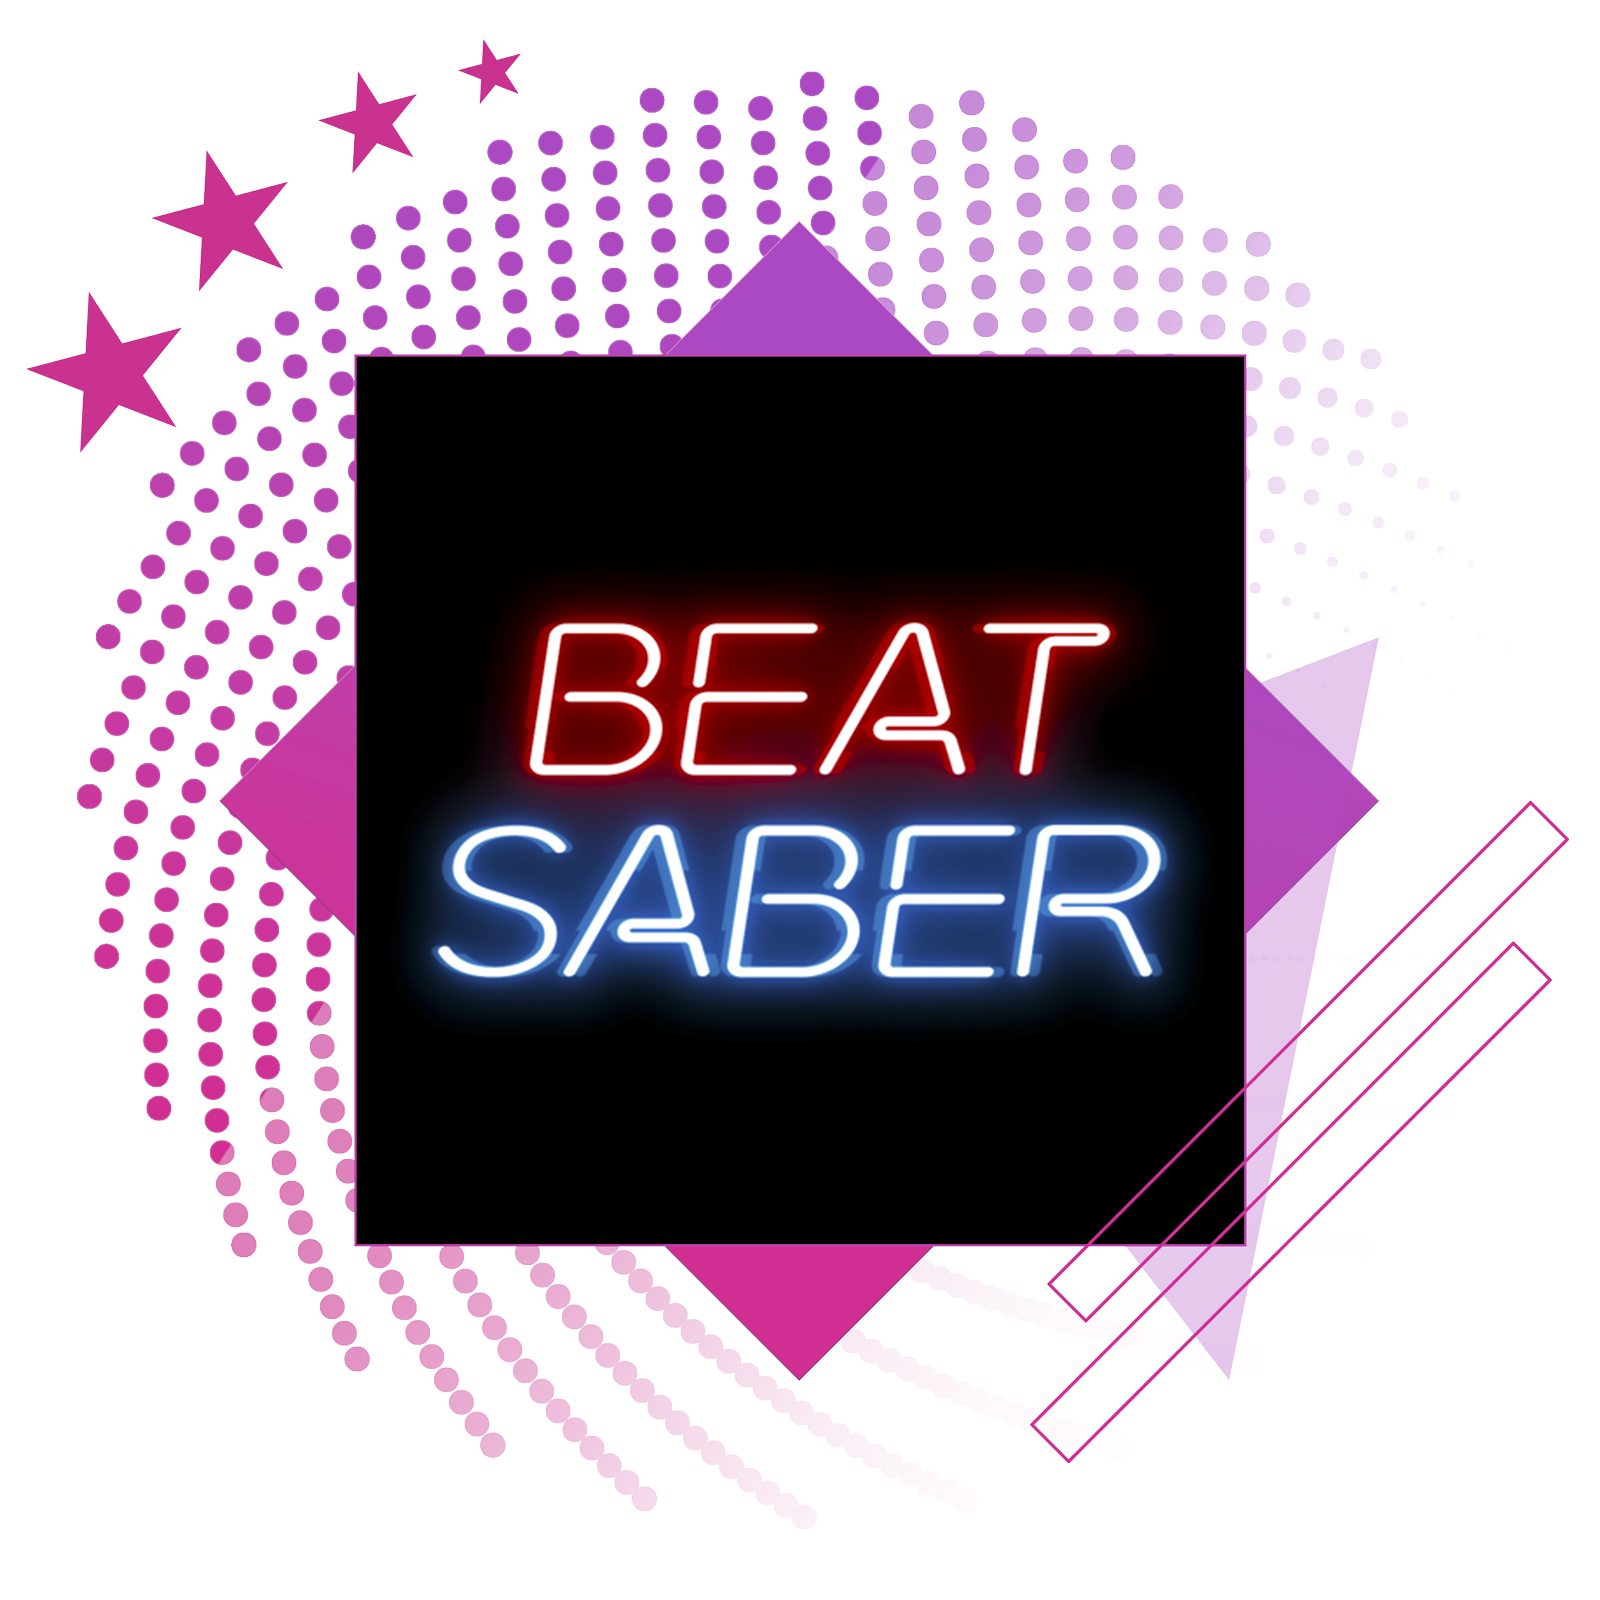 Τα καλύτερα παιχνίδια ρυθμού εικόνα προώθησης με εικαστικό προώθησης του Beat Saber.